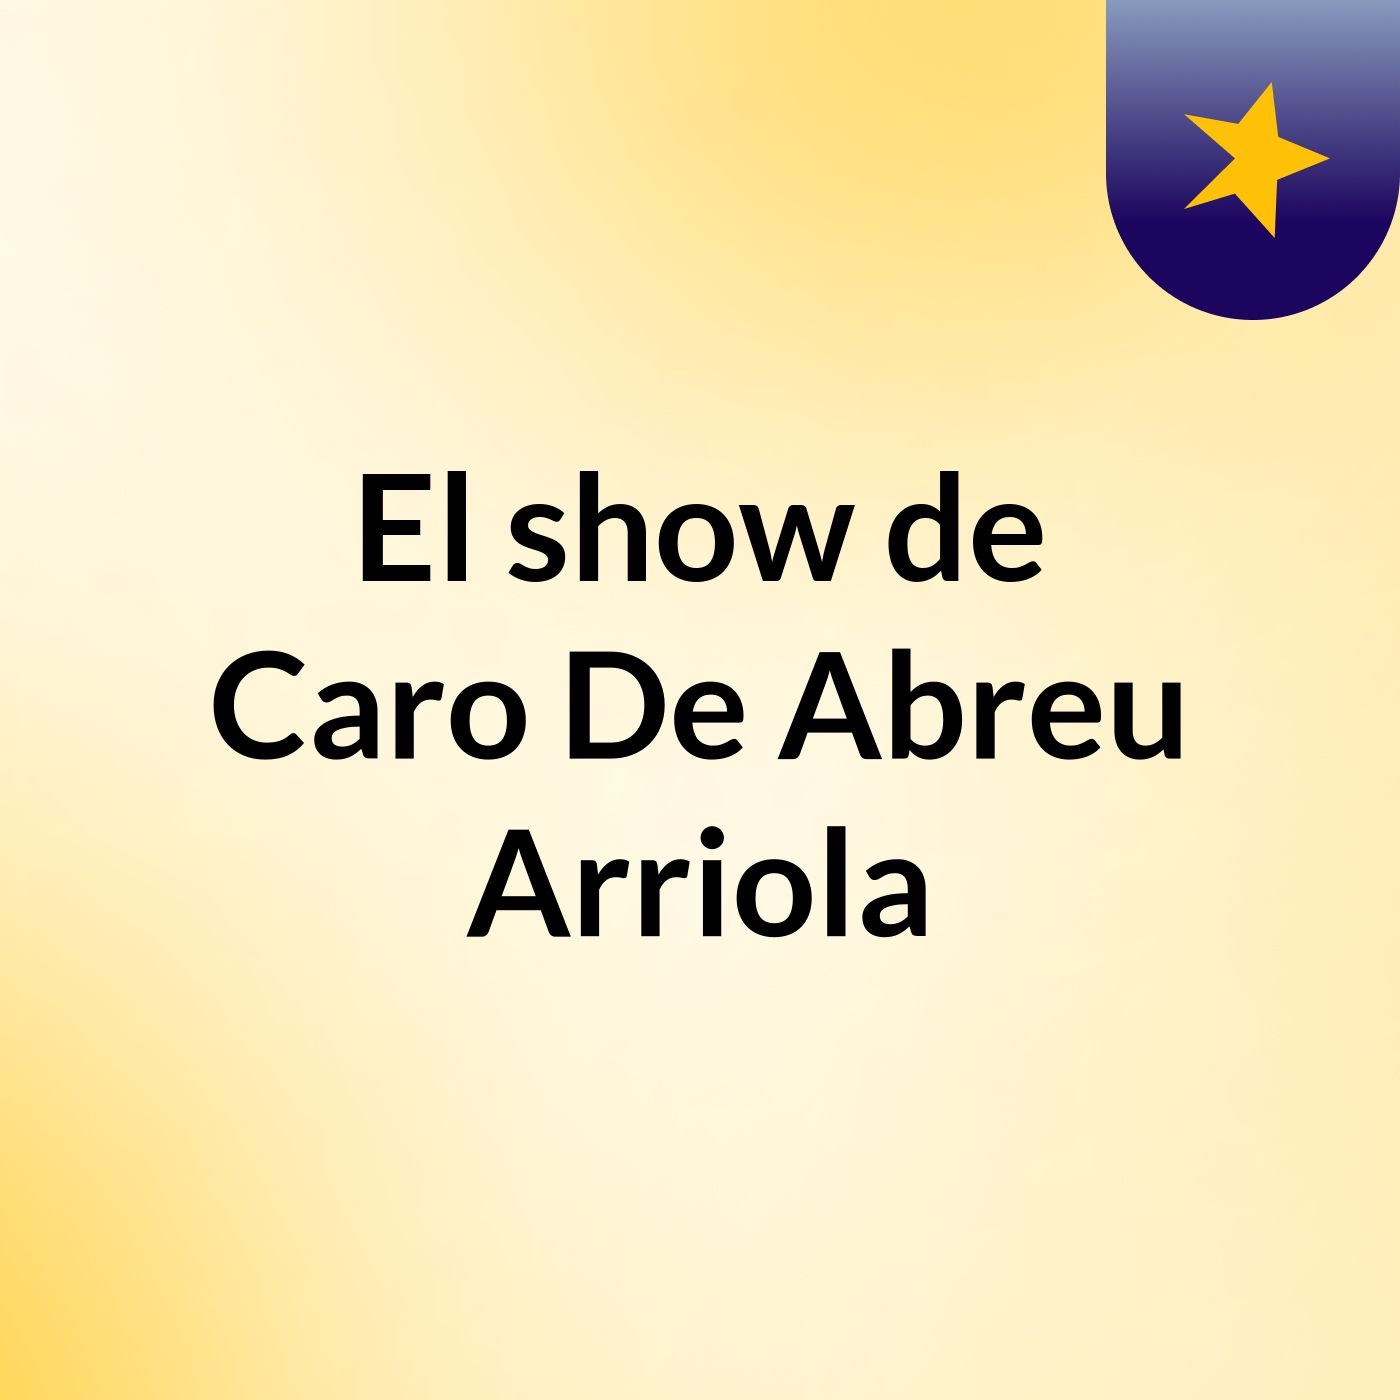 El show de Caro De Abreu Arriola